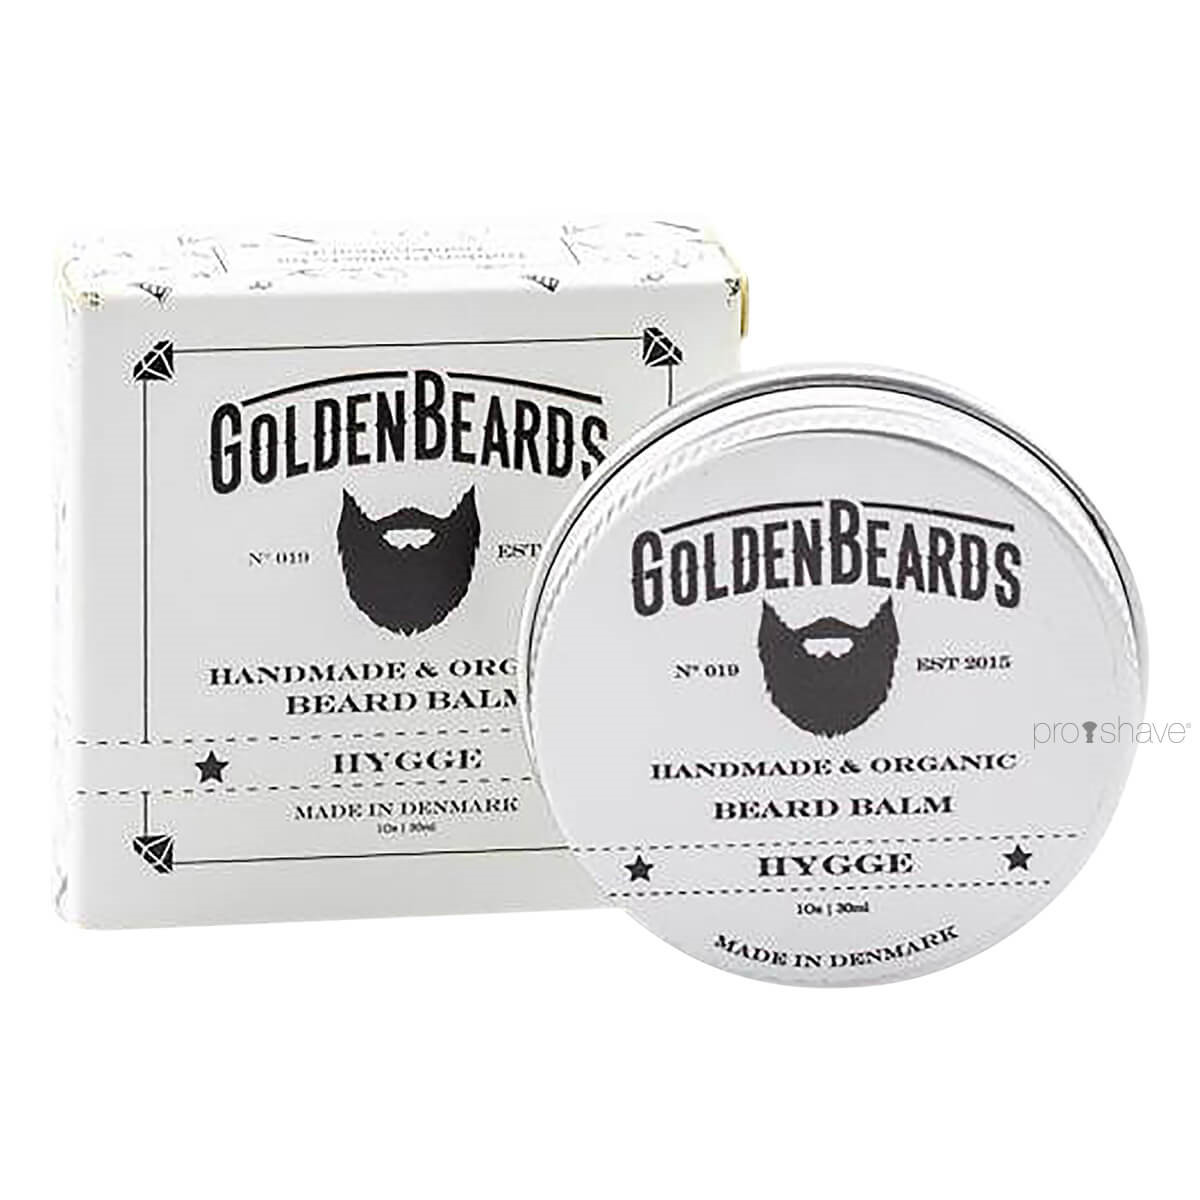 10: Golden Beards Skægbalm, Hygge, 30 ml.